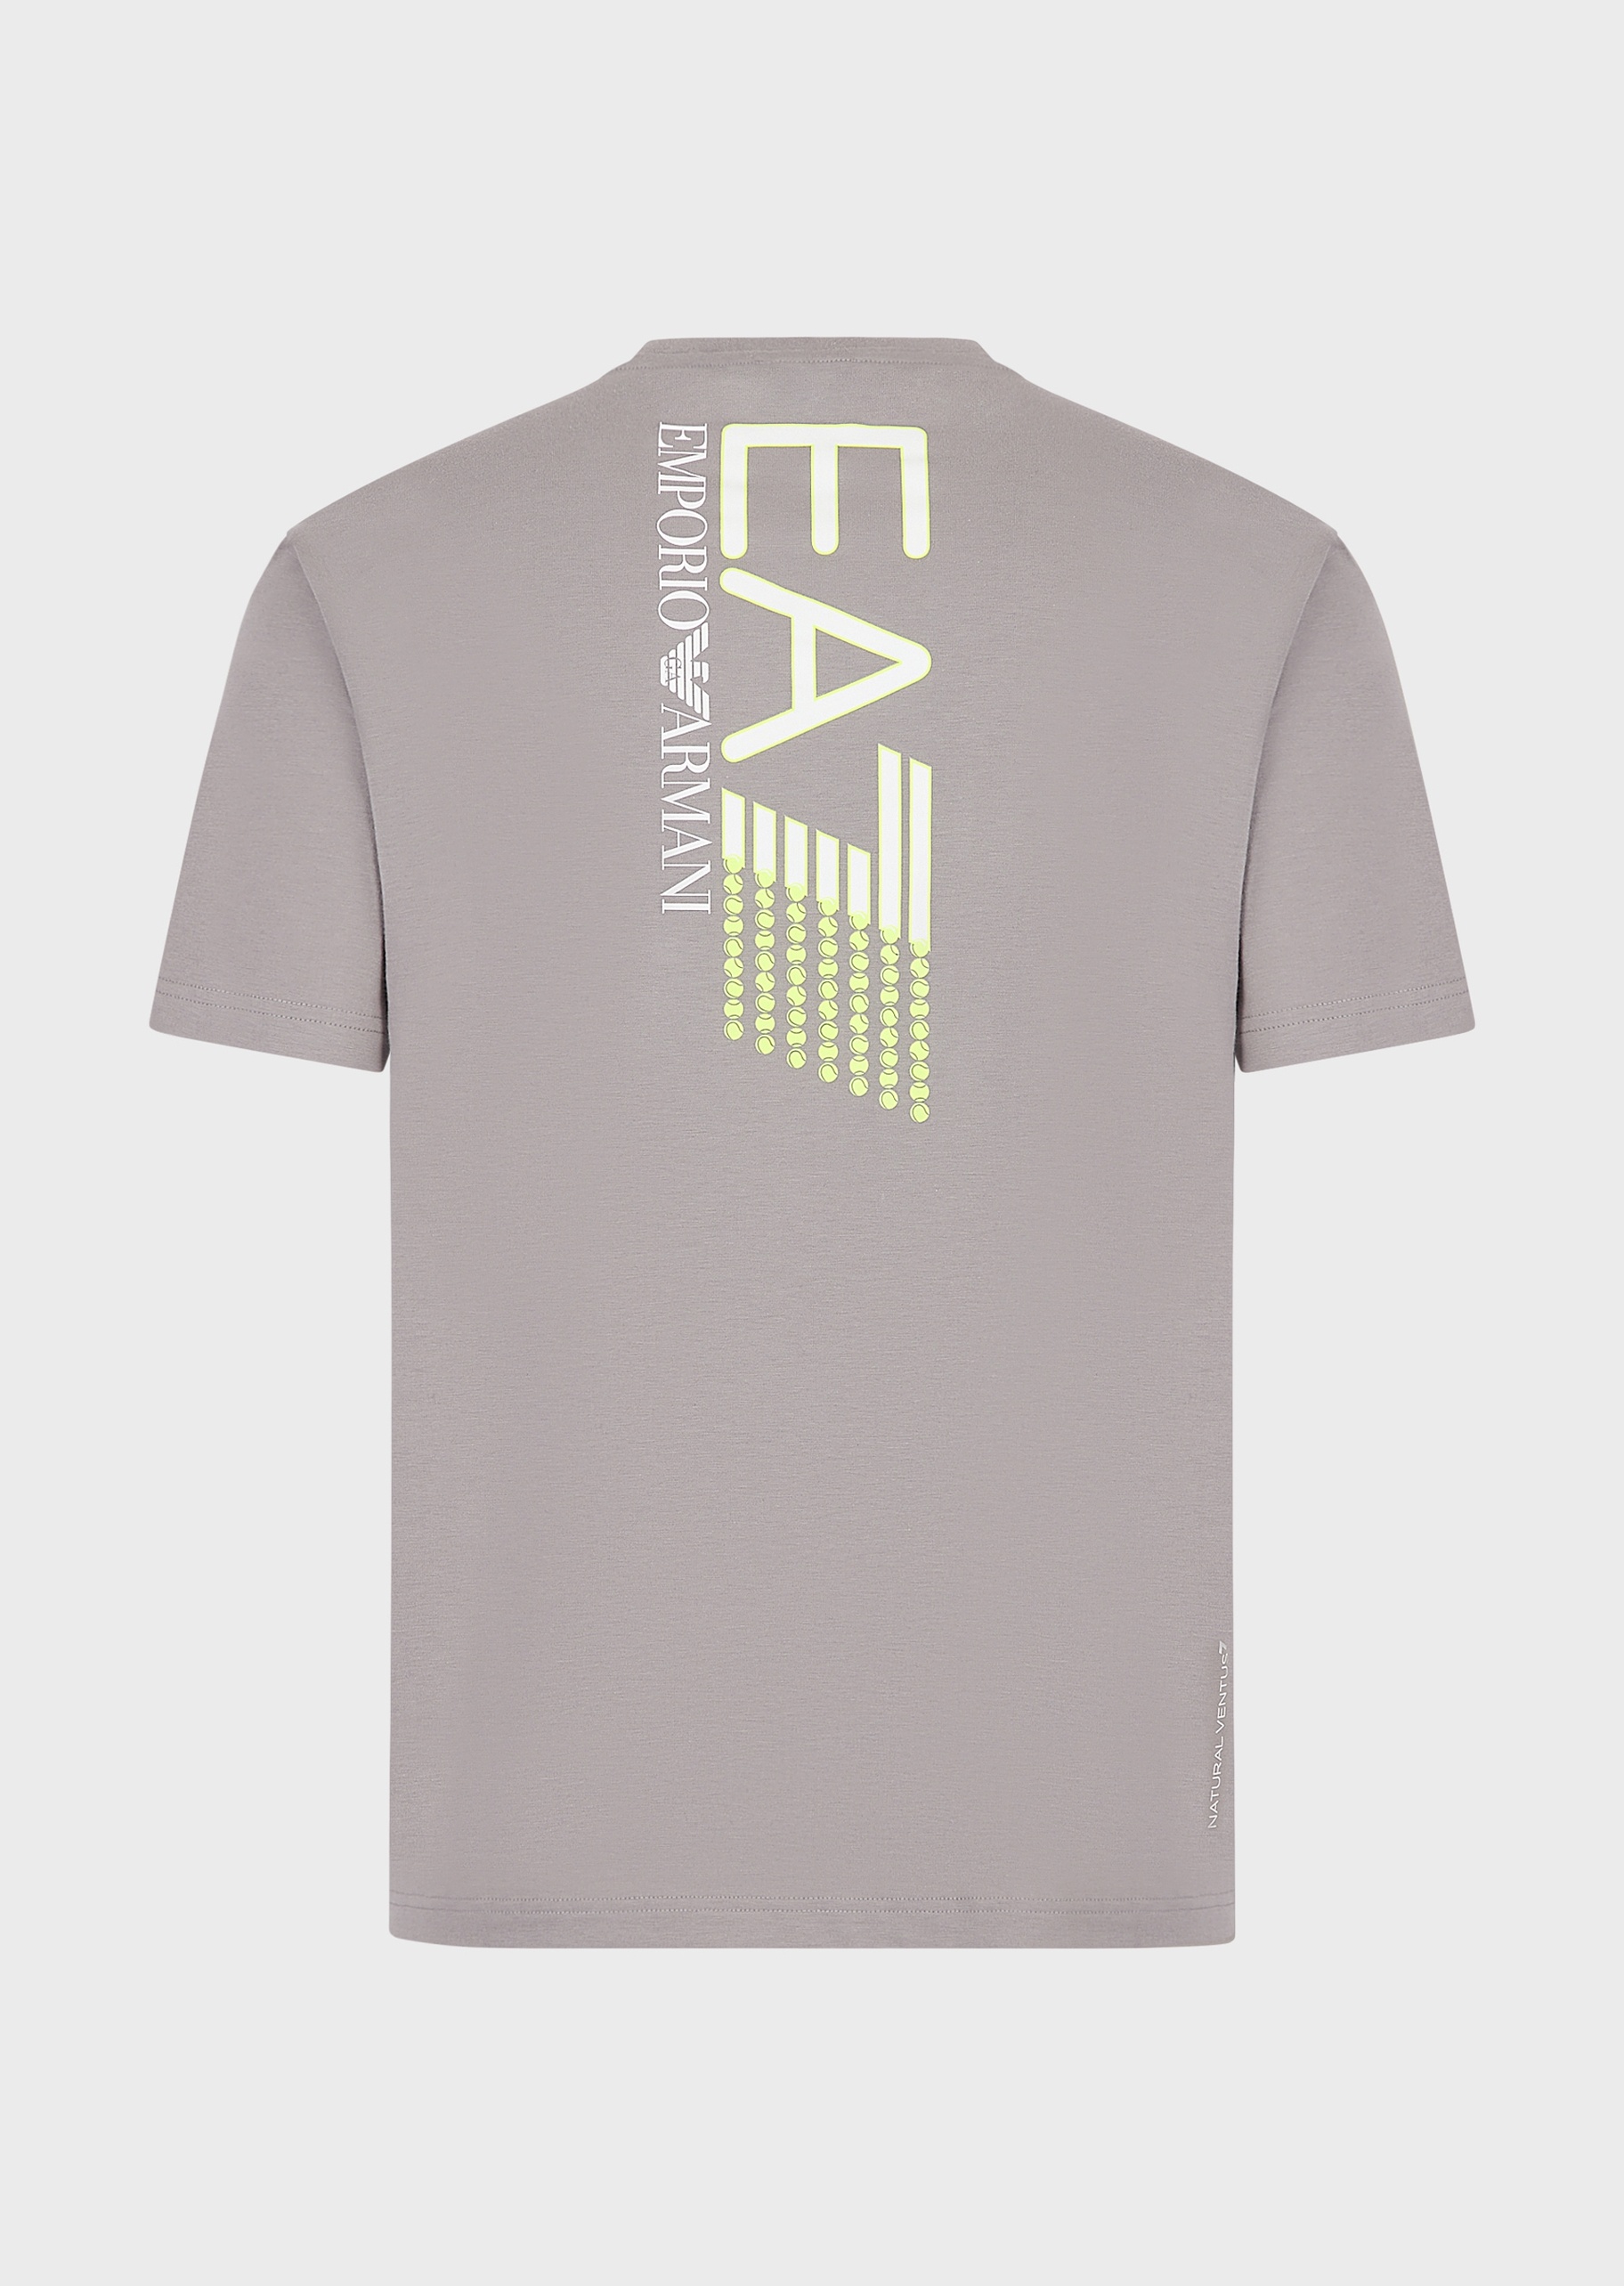 EA7 荧光标识运动短袖T恤